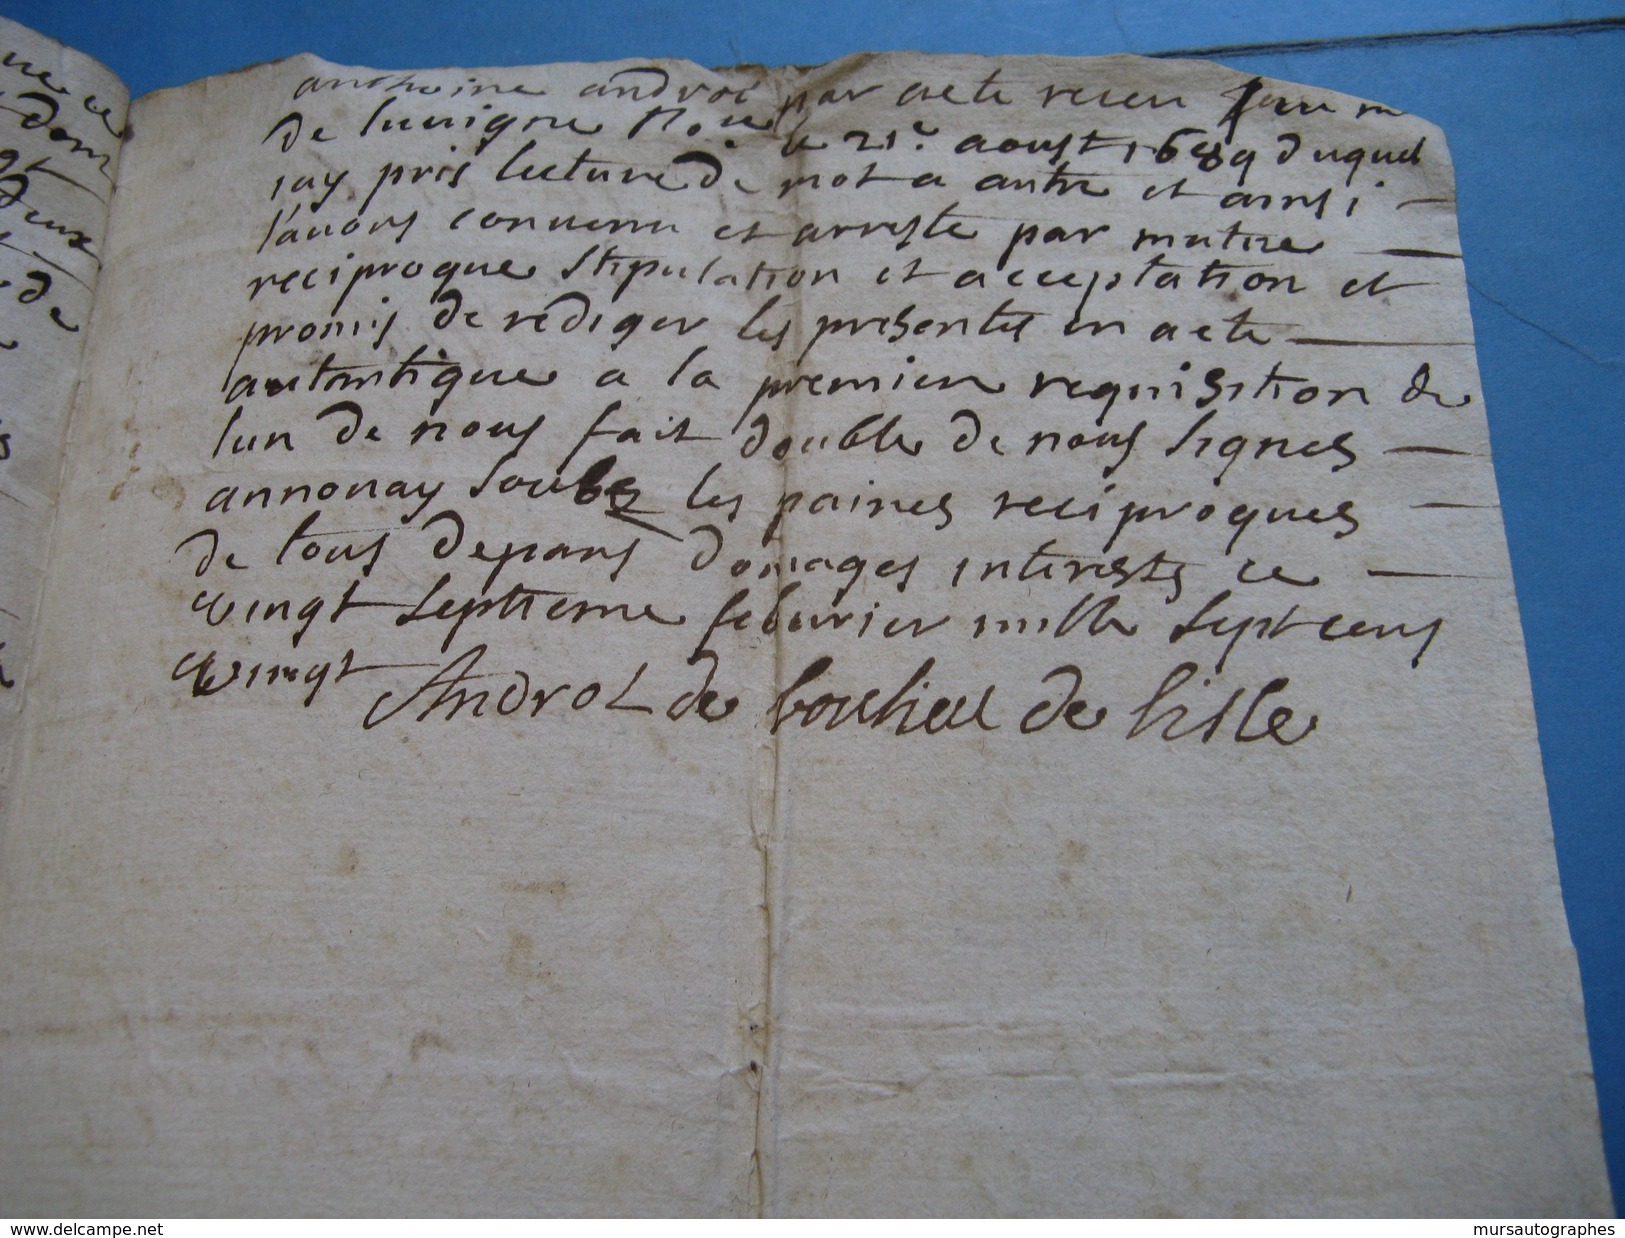 INTERRESSANT DOSSIER DE + DE 50 DOCS FAMILLE DELISLE DE CHARLIEU 1645-1780 QUITTANCES RELIGIEUX MILITAIRES LYON ARDECHE